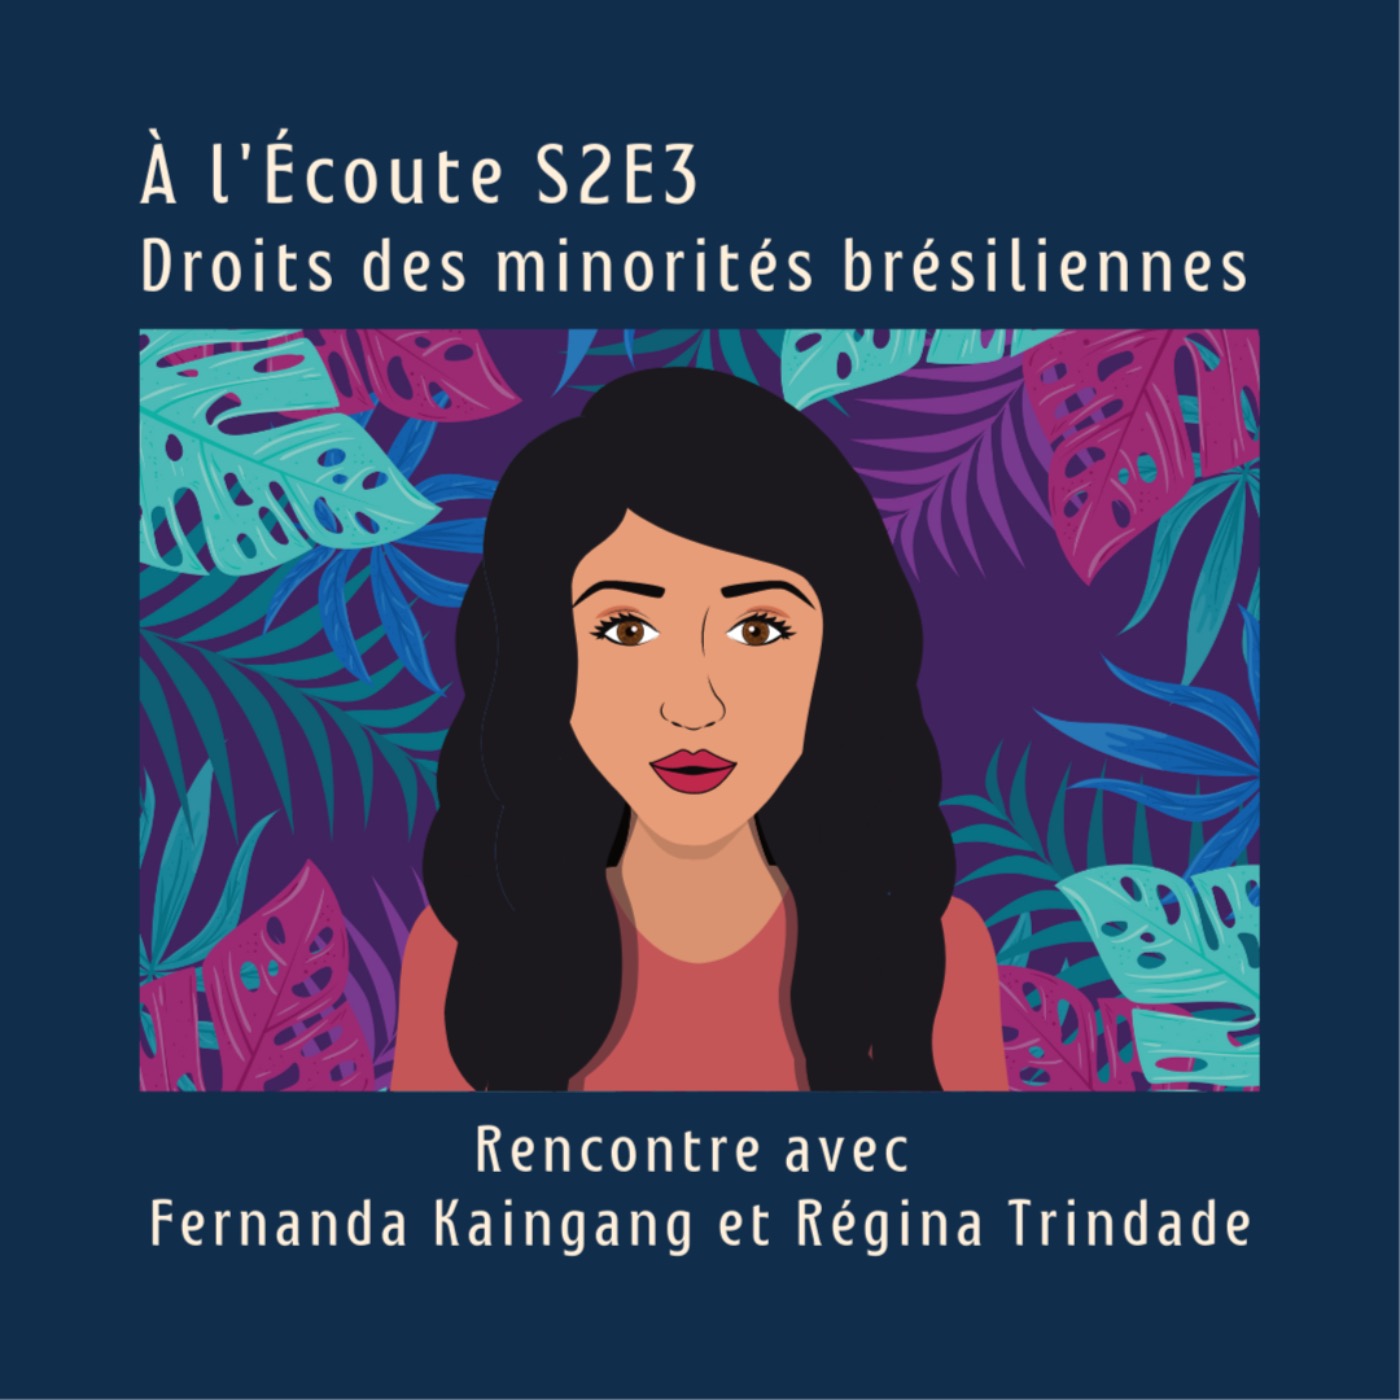 S2E3 - Les droits des minorités brésiliennes